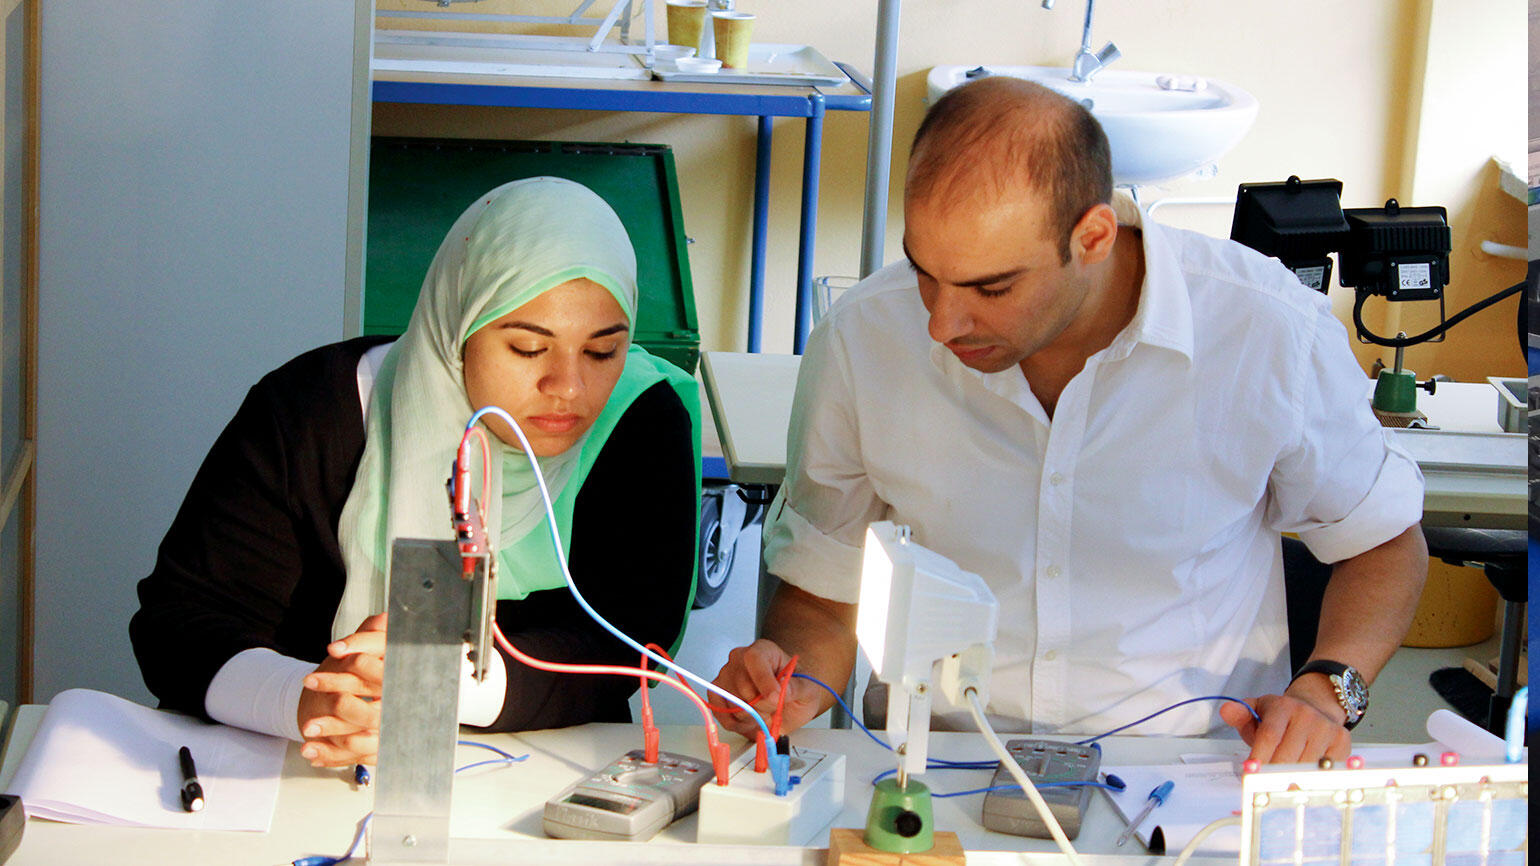 Frau und Mann - mutmaßlich aus einem arabischen Land - arbeiten an einer elektrischen Installation